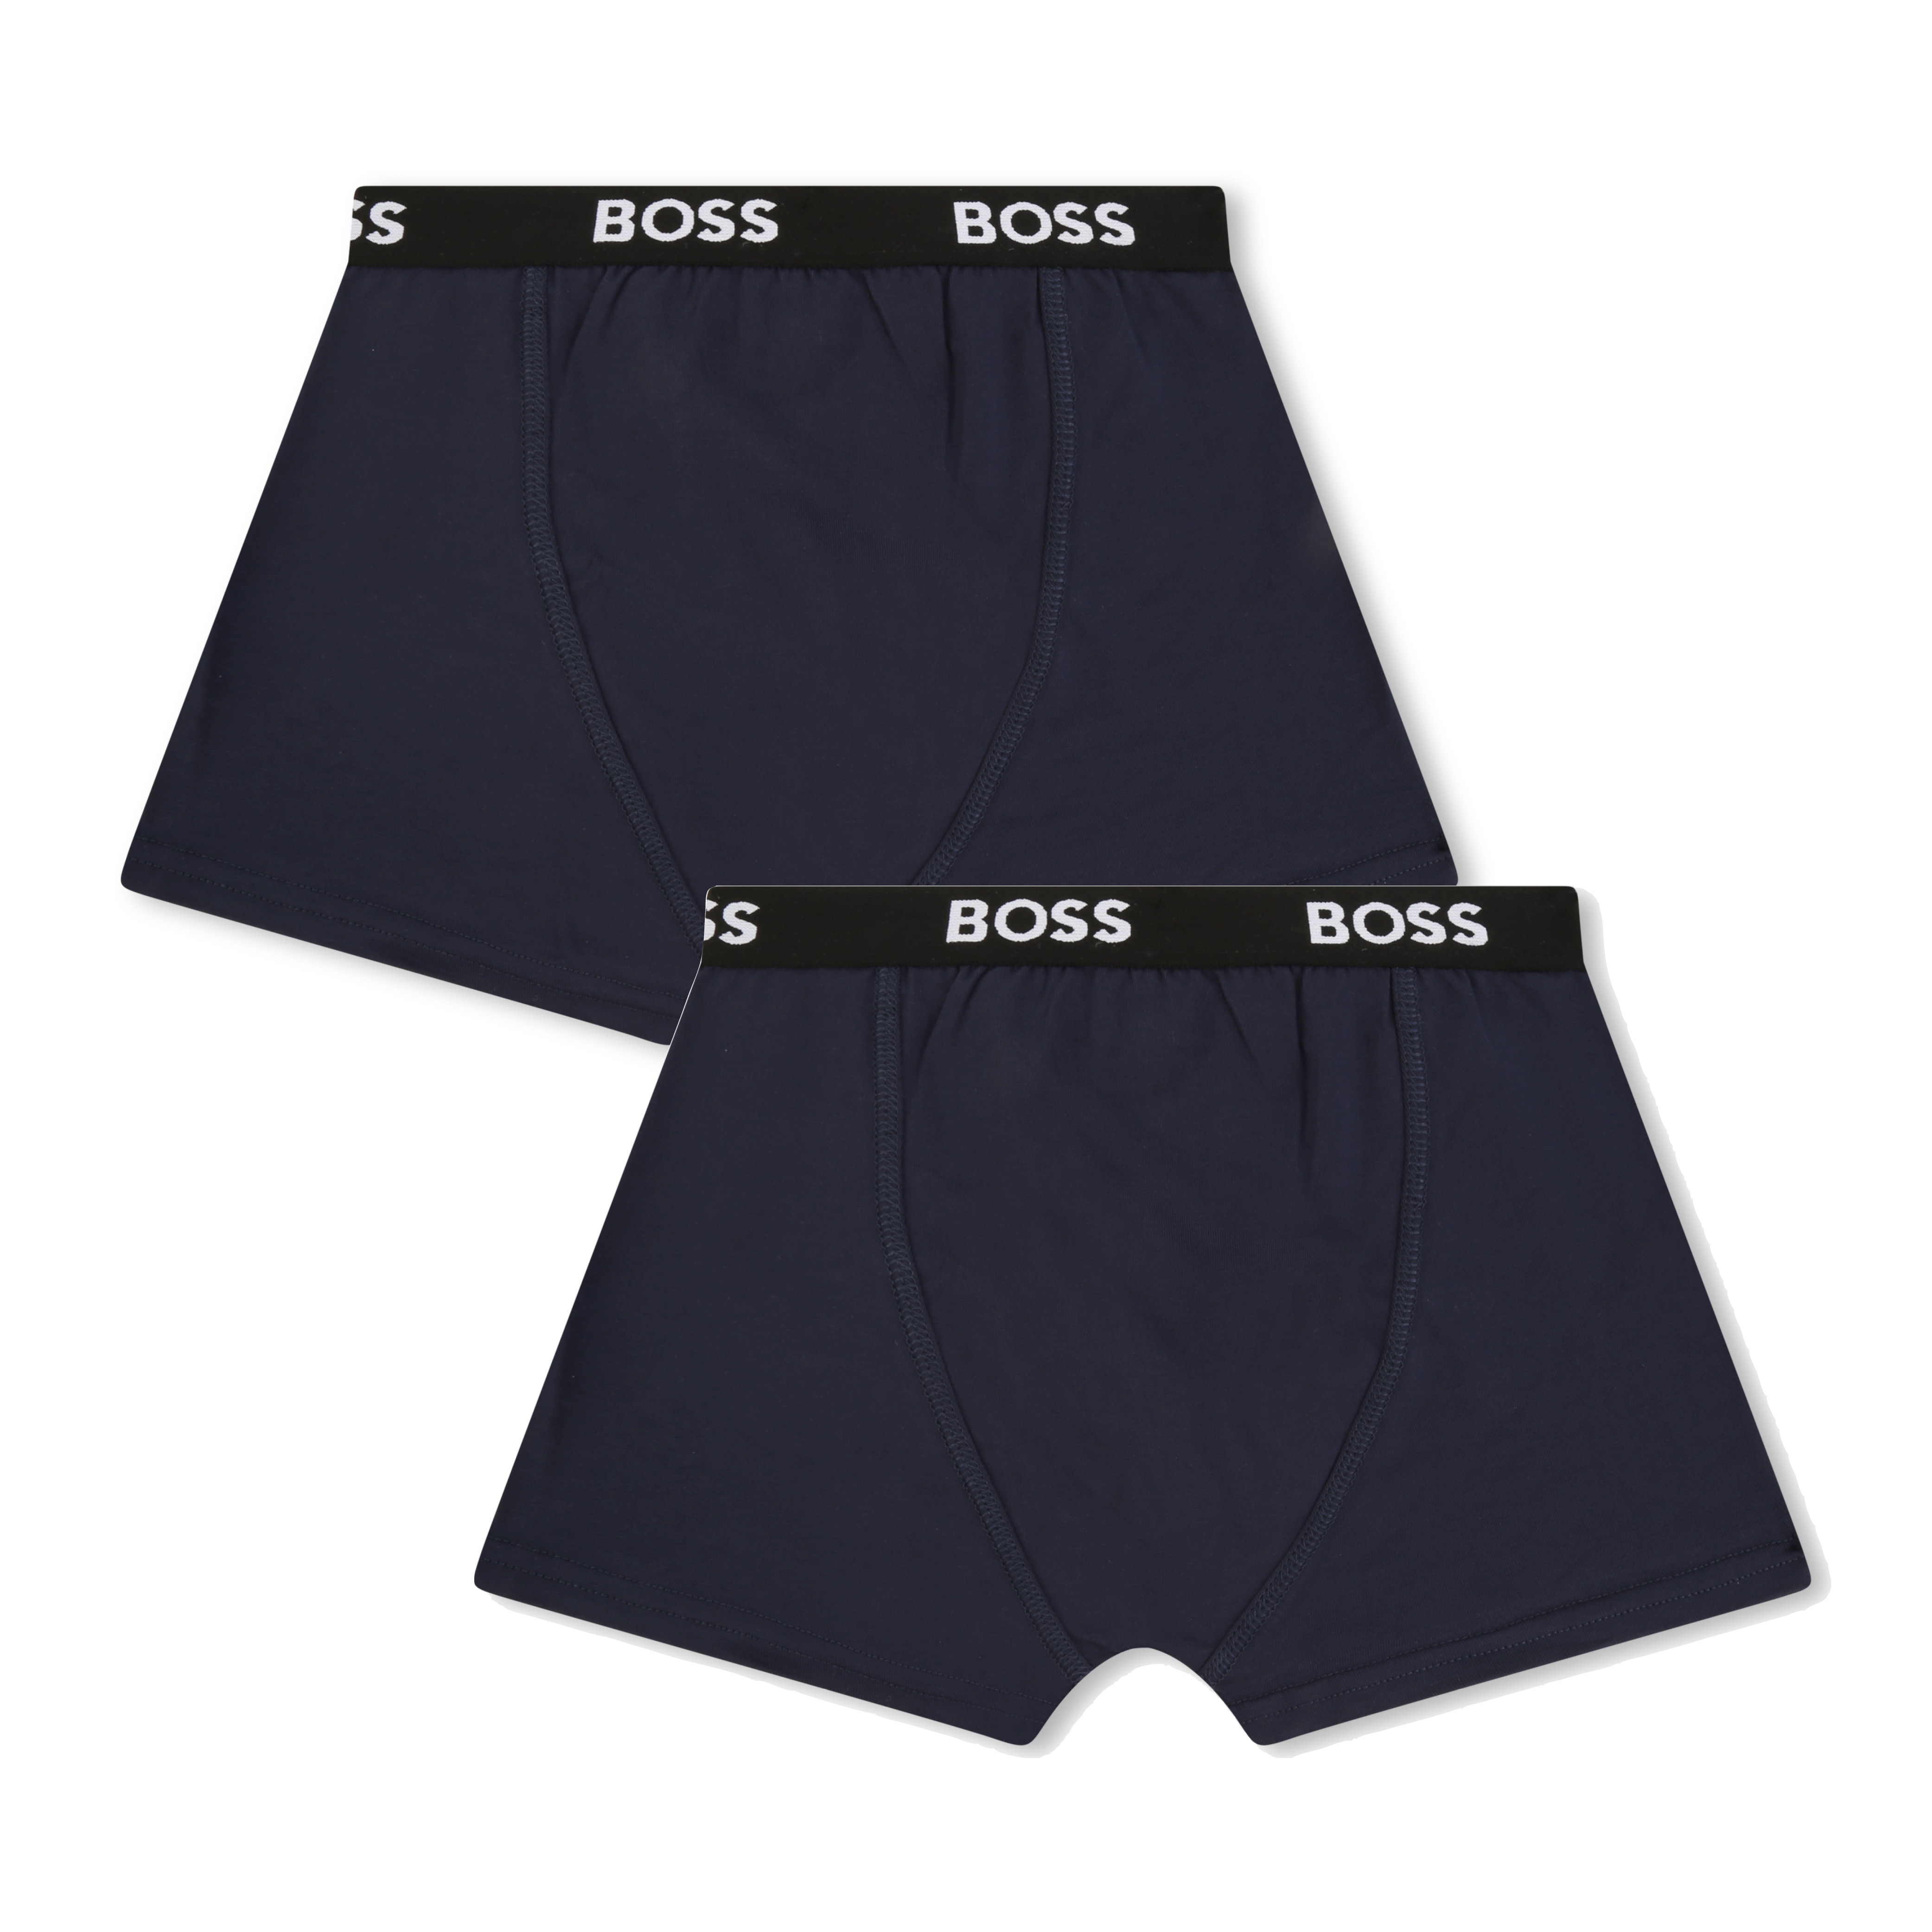 Set van 2 boxershorts BOSS Voor